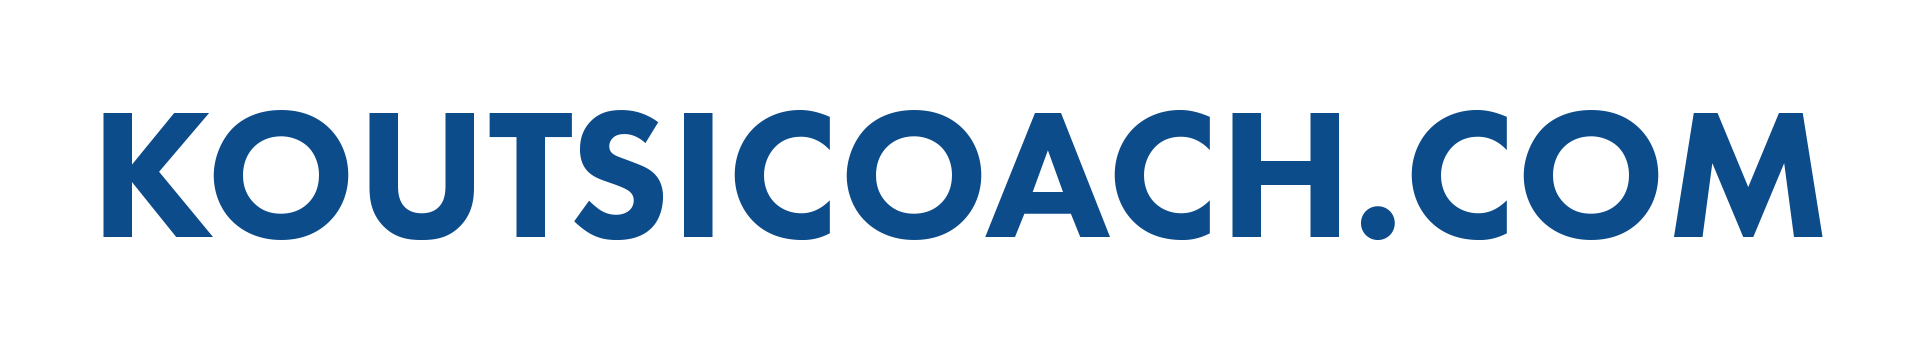 koutsicoach-logo-.png